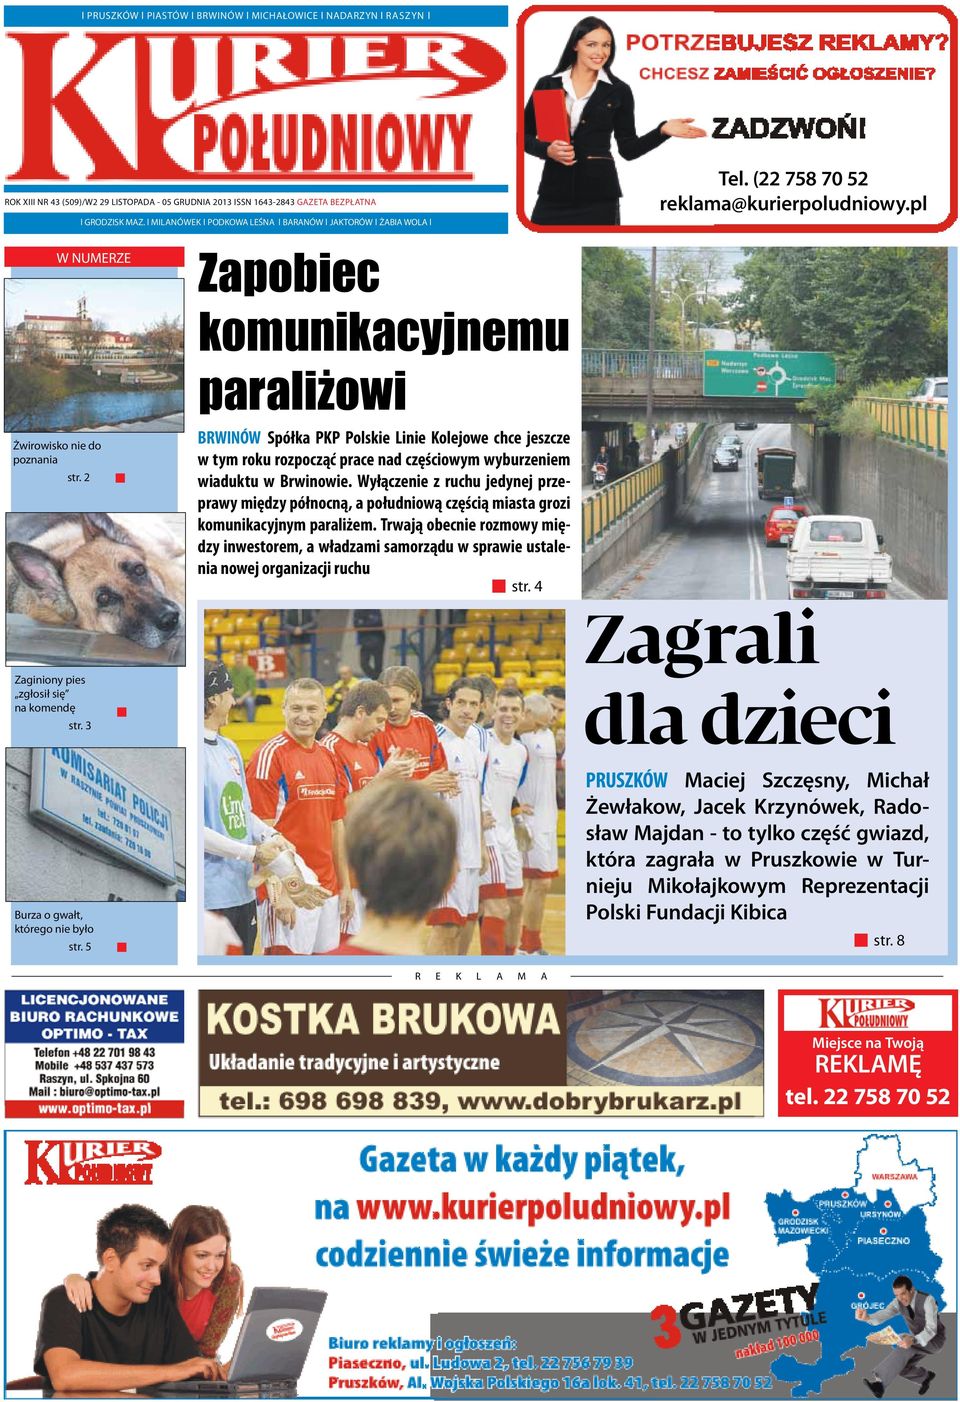 2 Zapobiec komunikacyjnemu paraliżowi BRWINÓW Spółka PKP Polskie Linie Kolejowe chce jeszcze w tym roku rozpocząć prace nad częściowym wyburzeniem wiaduktu w Brwinowie.